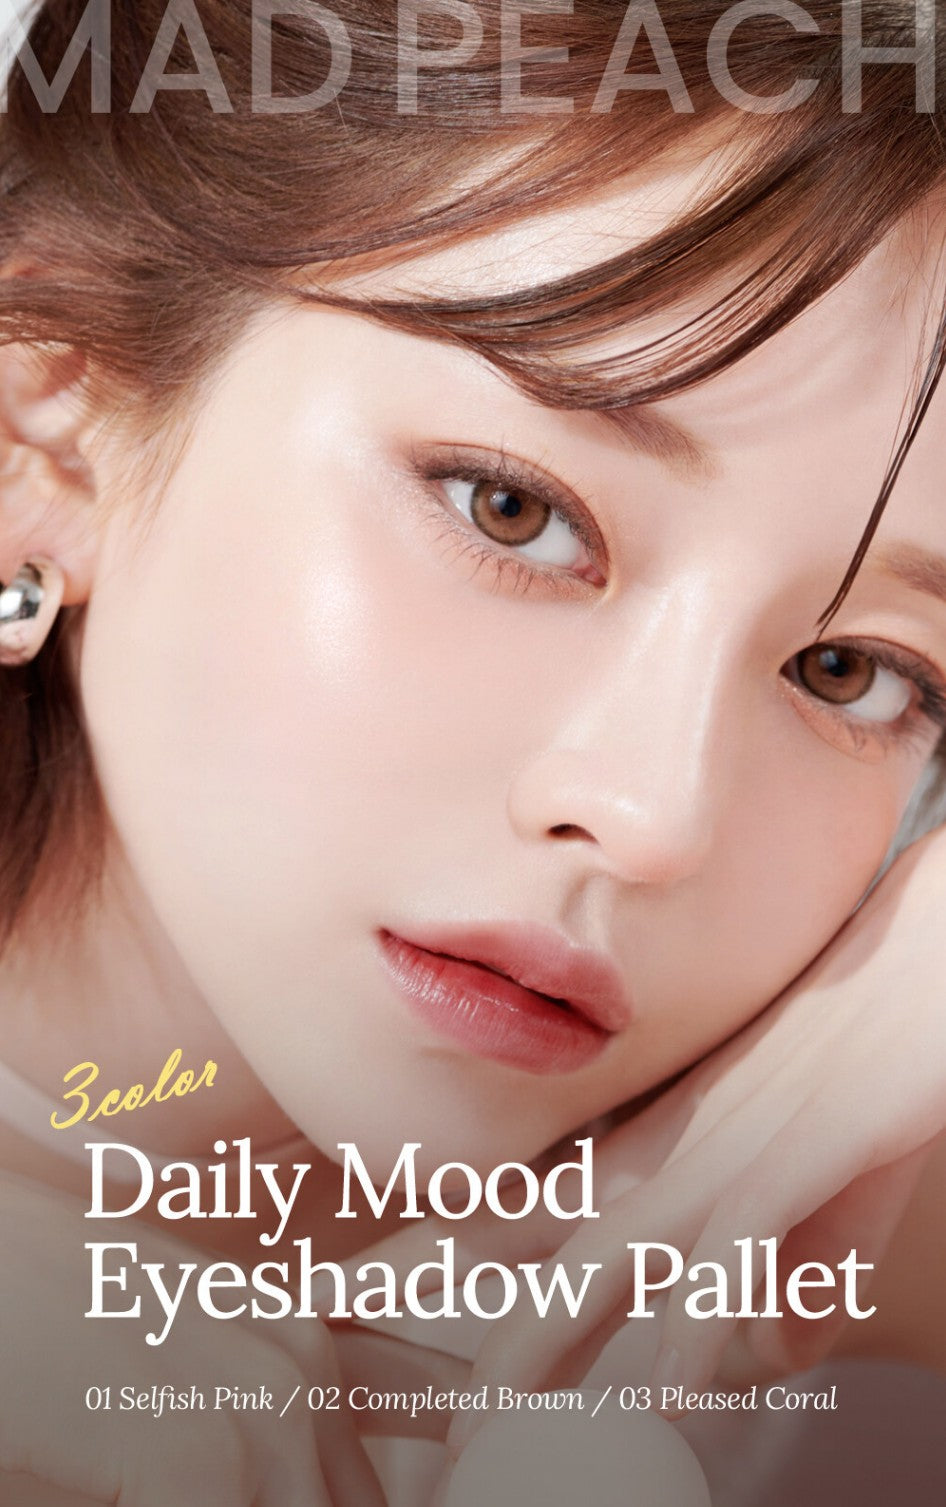 Mad Peach] Daily Mood Eyeshadow Palette – mochiskin